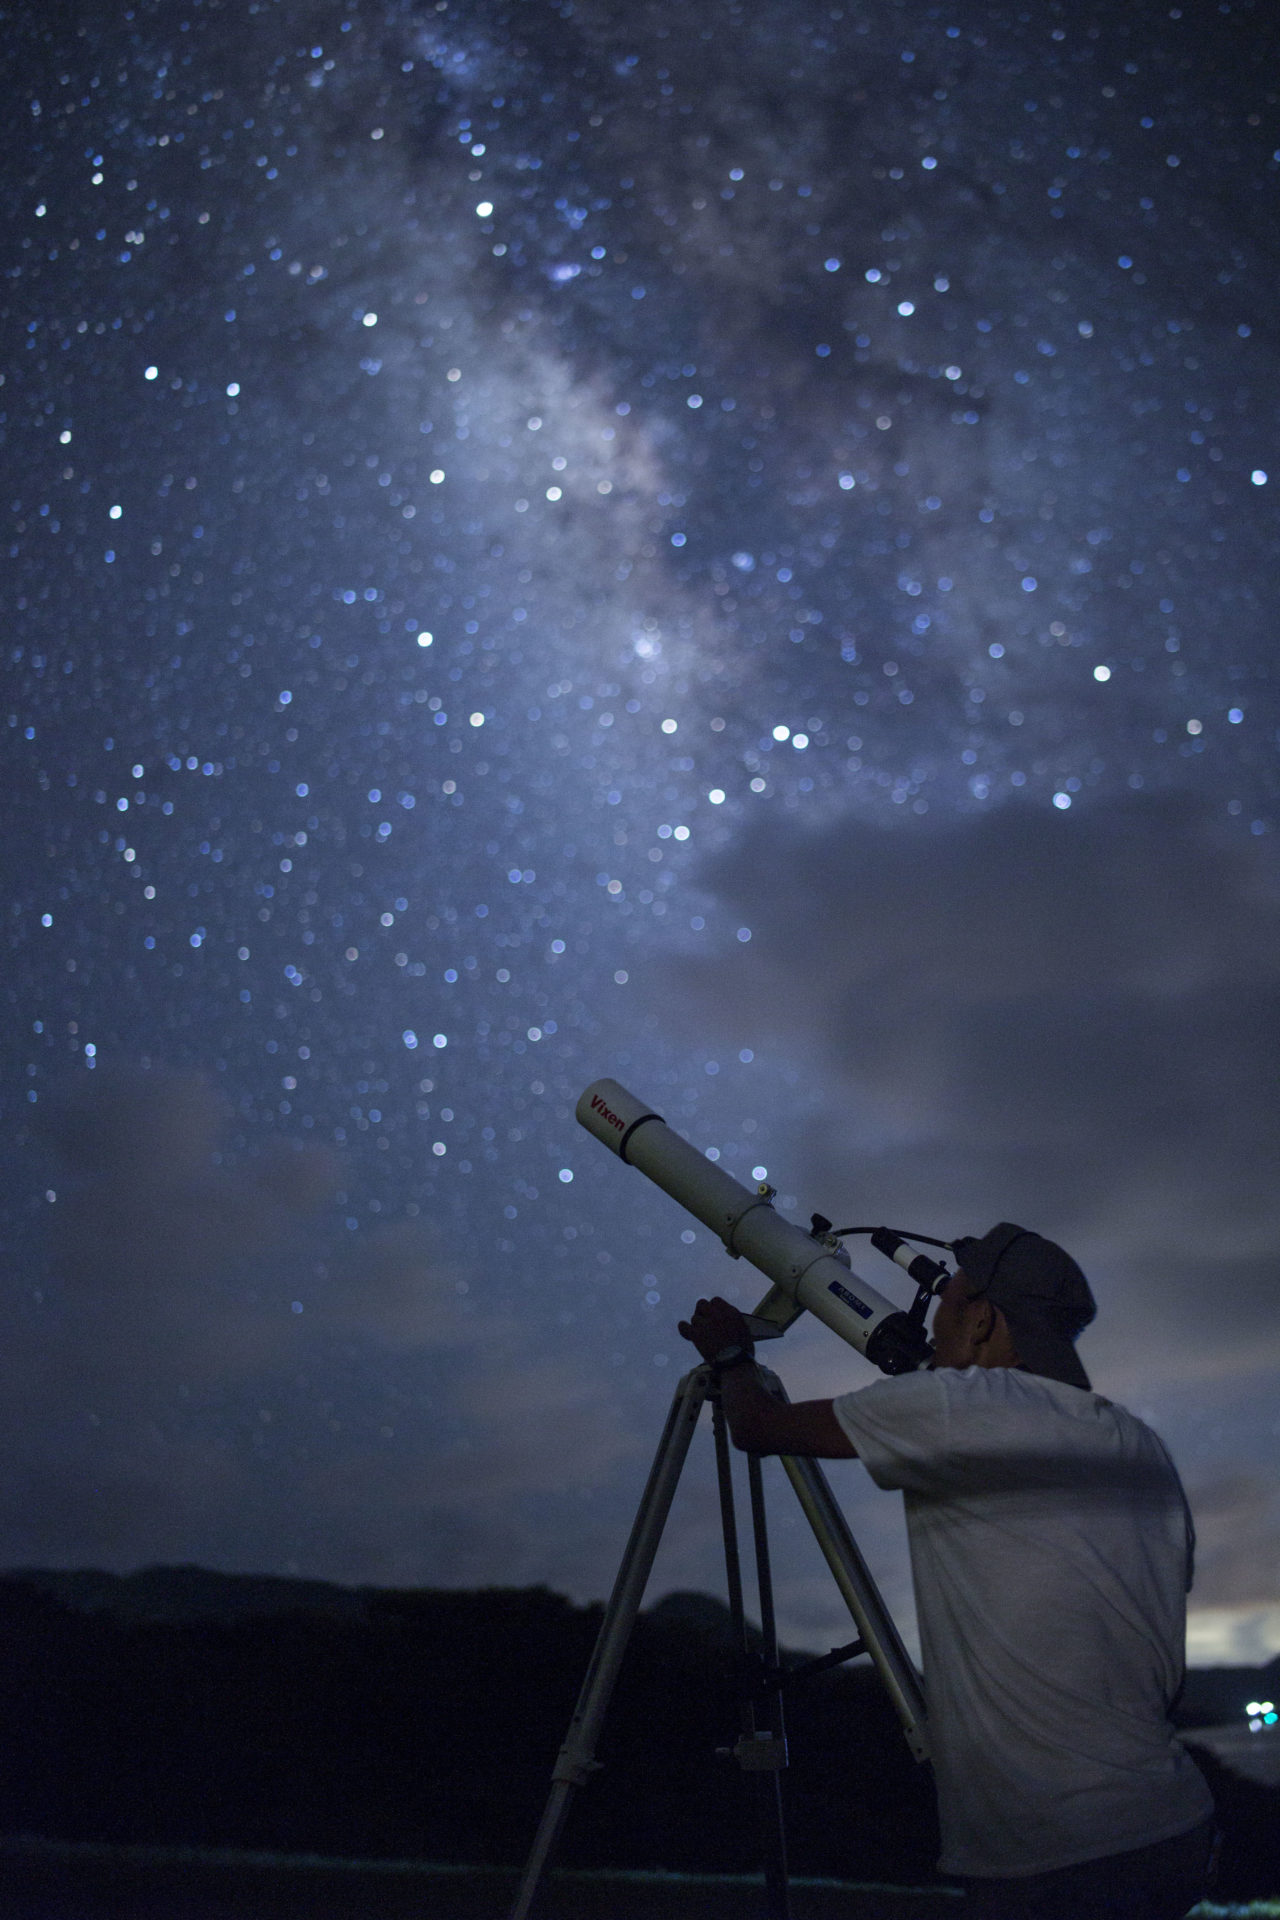 流れ星の丘 公式 石垣島星空保護区久宇良公民館公認の星空ツアー 天体観測スポット